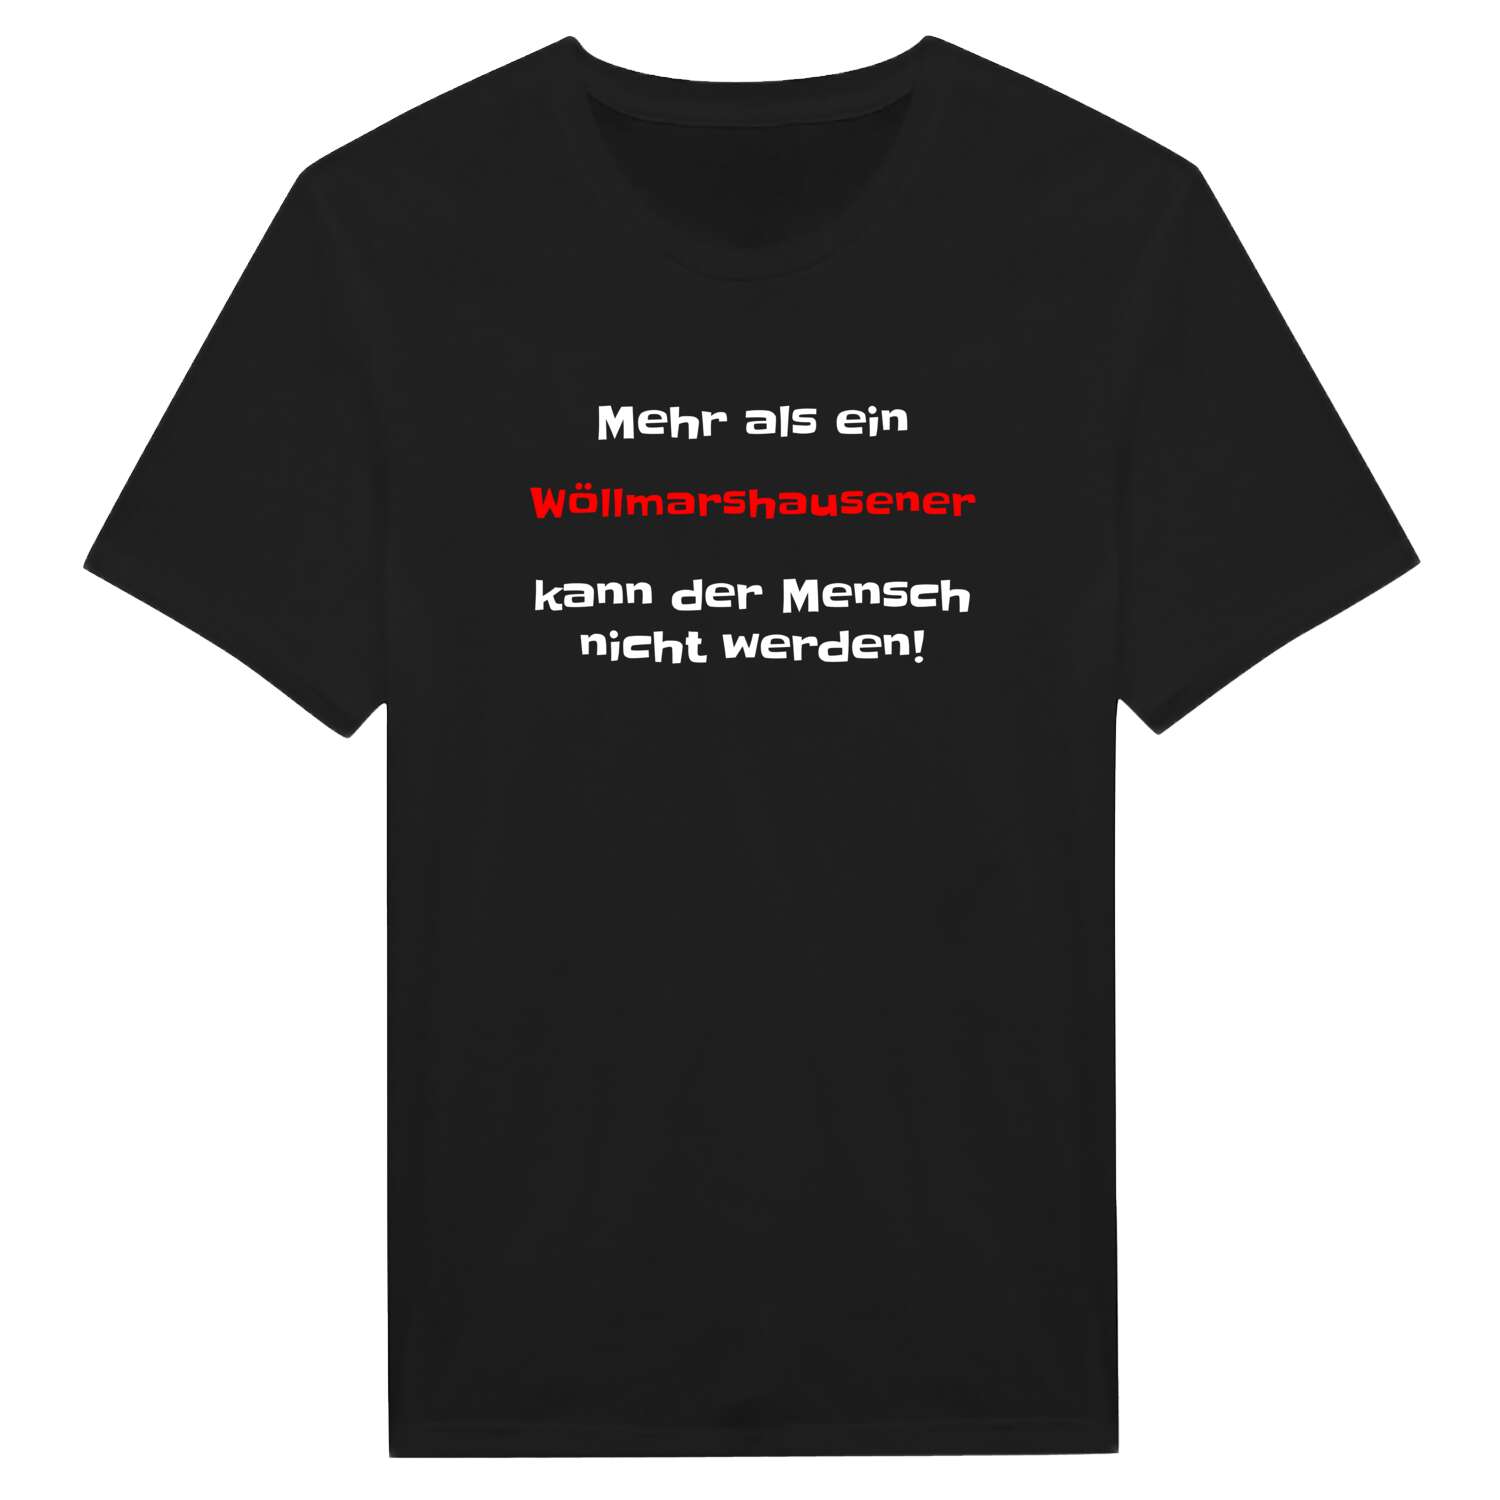 Wöllmarshausen T-Shirt »Mehr als ein«